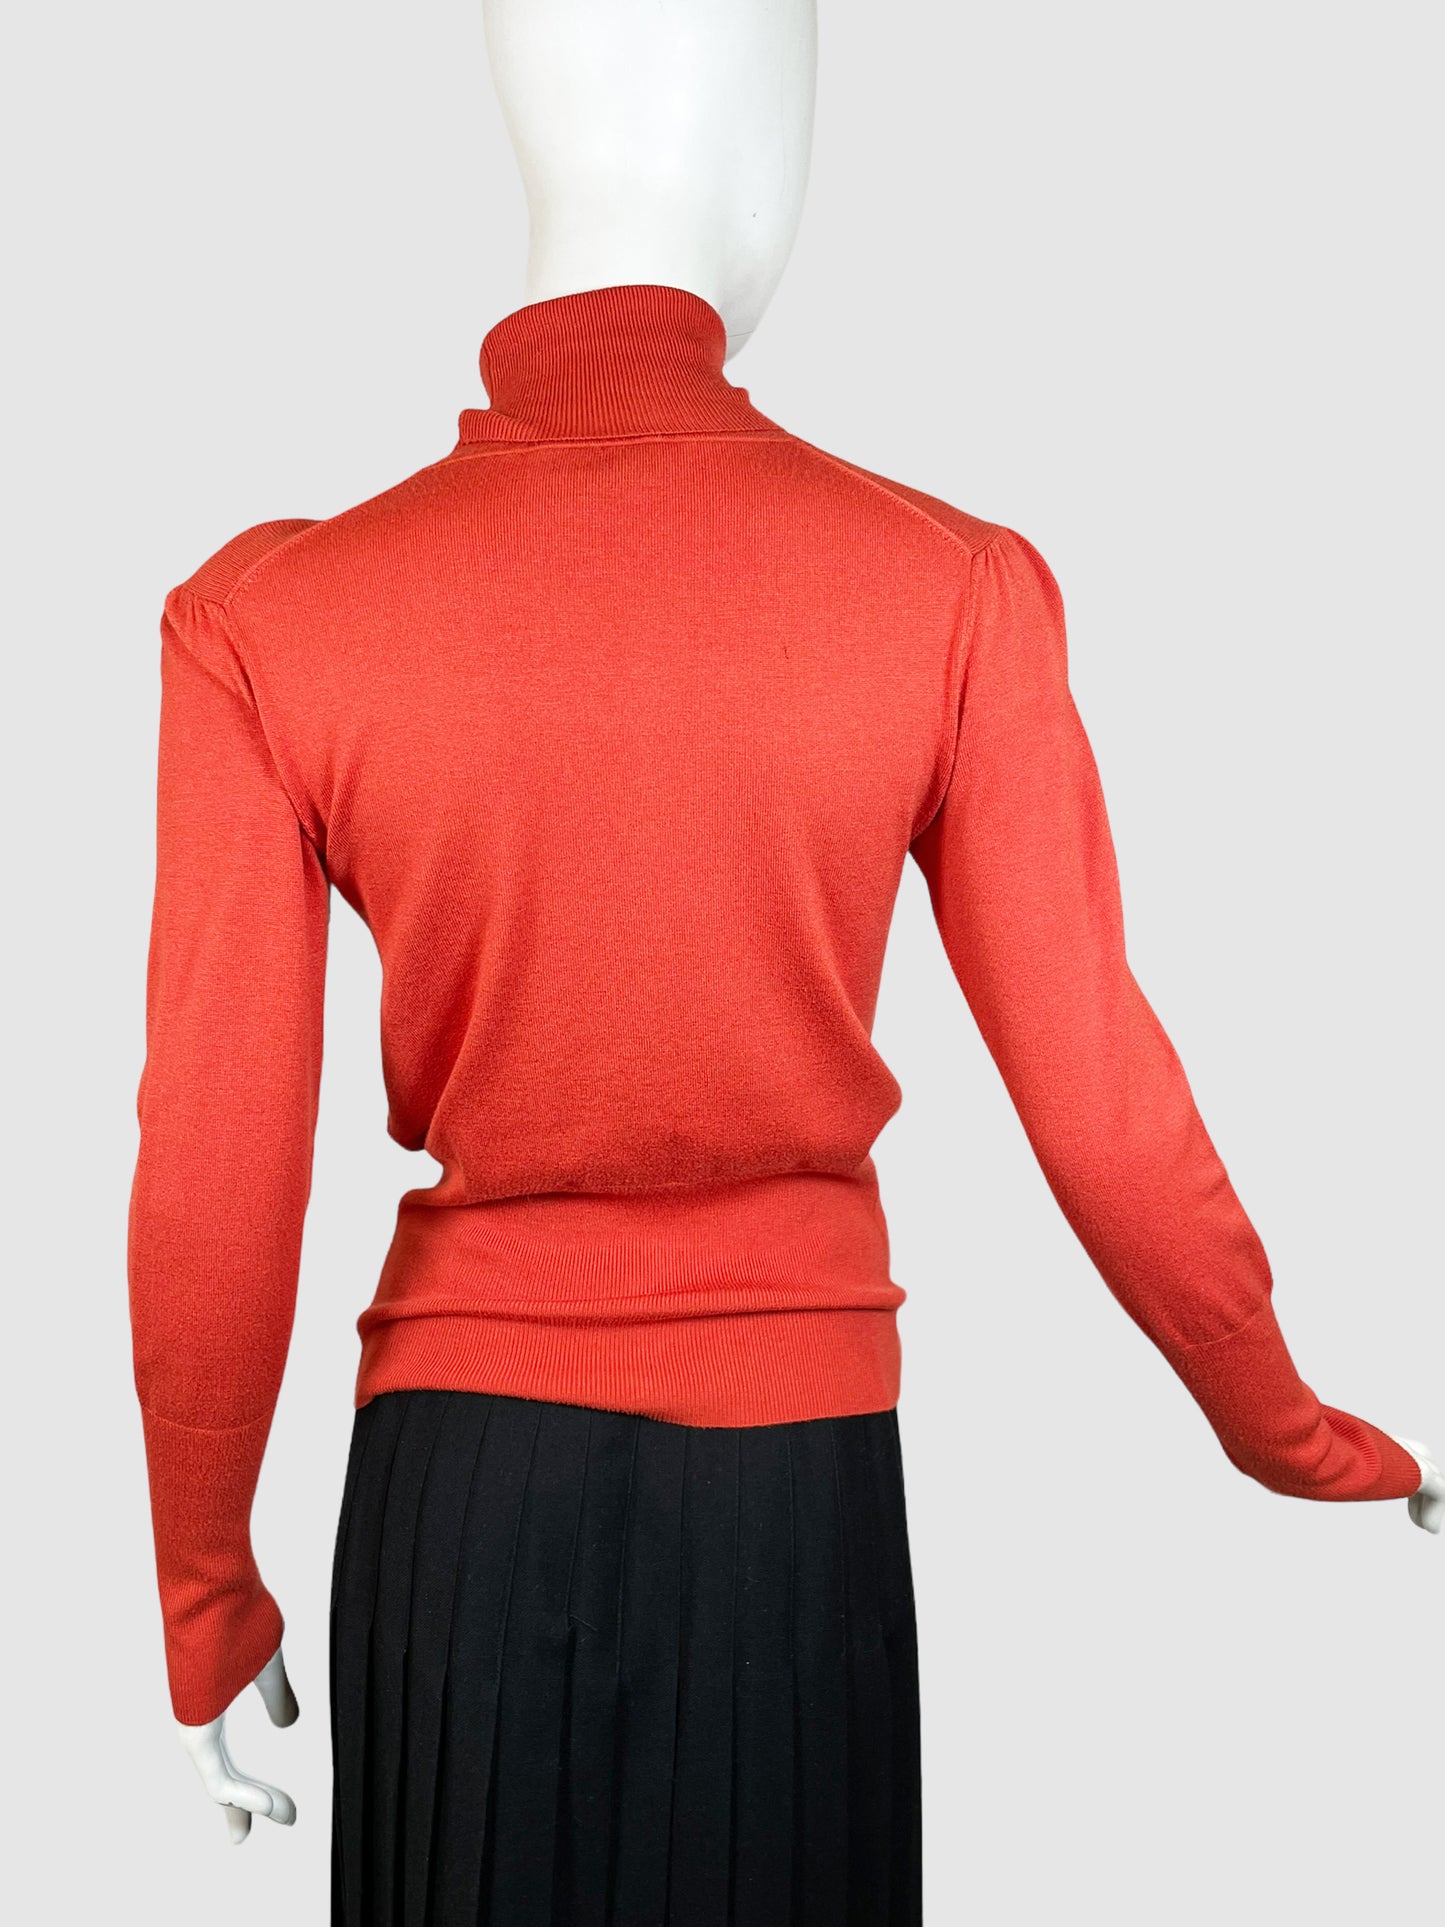 Escada Sport Turtleneck Sweater - Size S